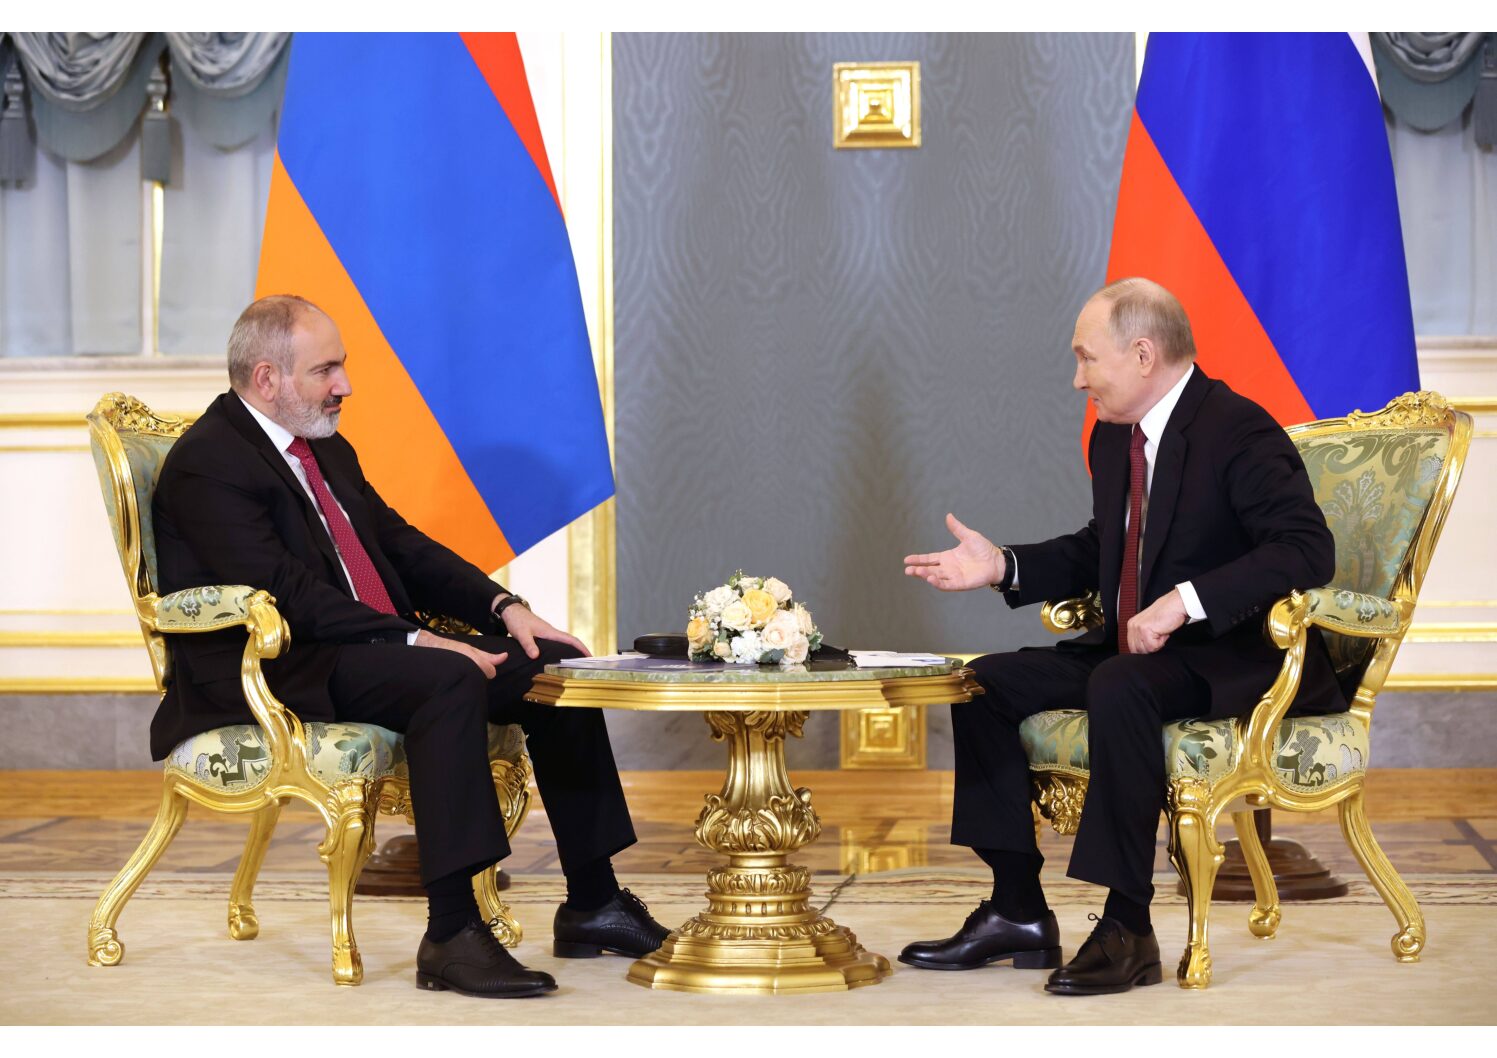 Le président russe Vladimir Poutine rencontre le premier ministre arménien Nikol Pashinyan à Moscou. (C) Sipa